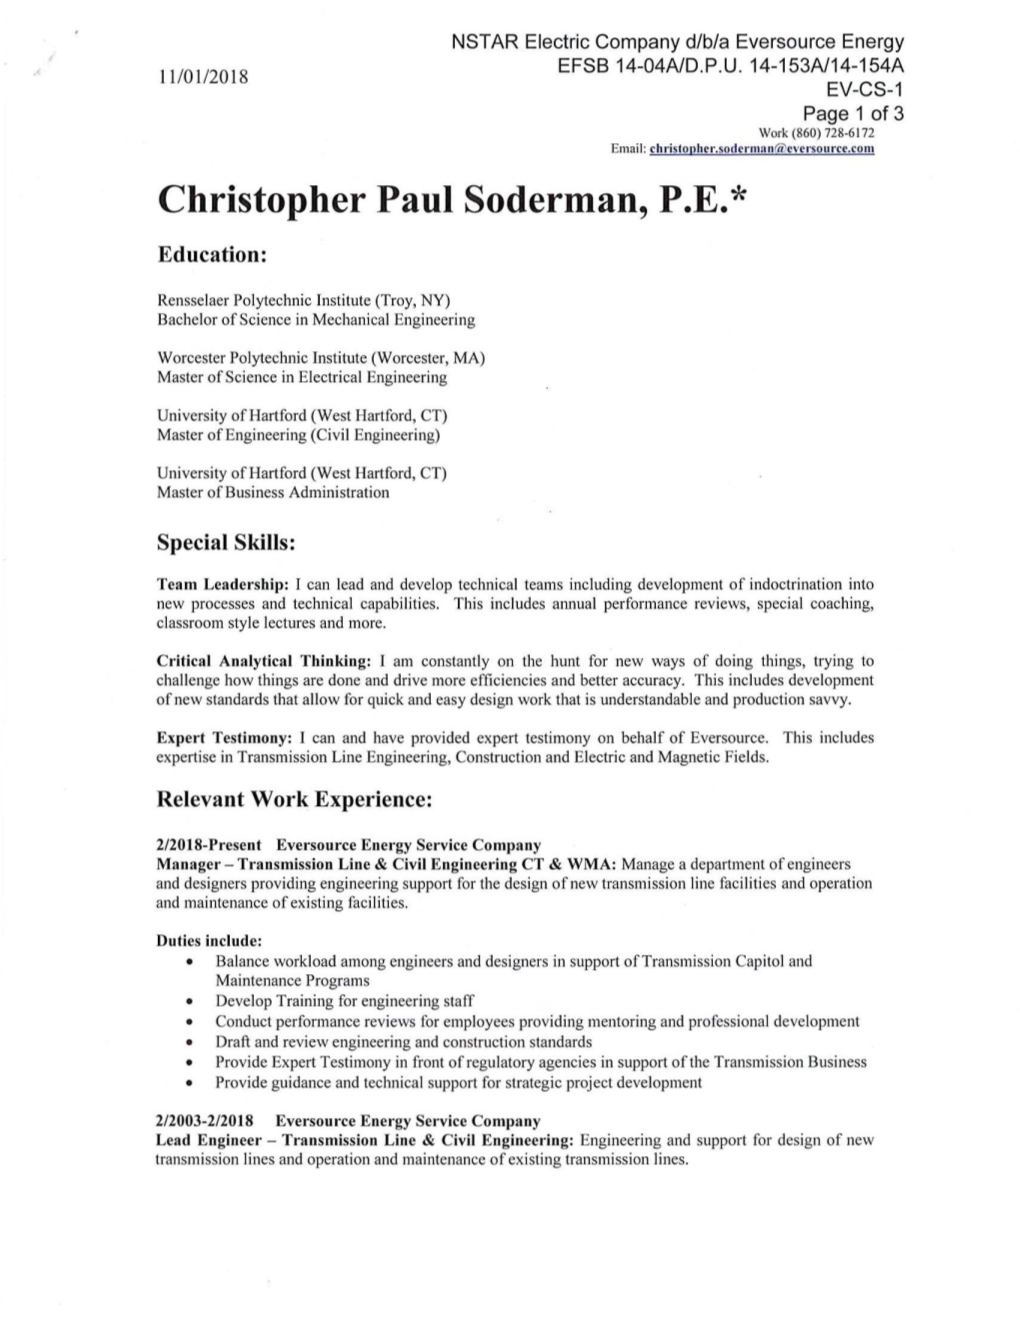 Christopher Paul Soderman, P.E.*